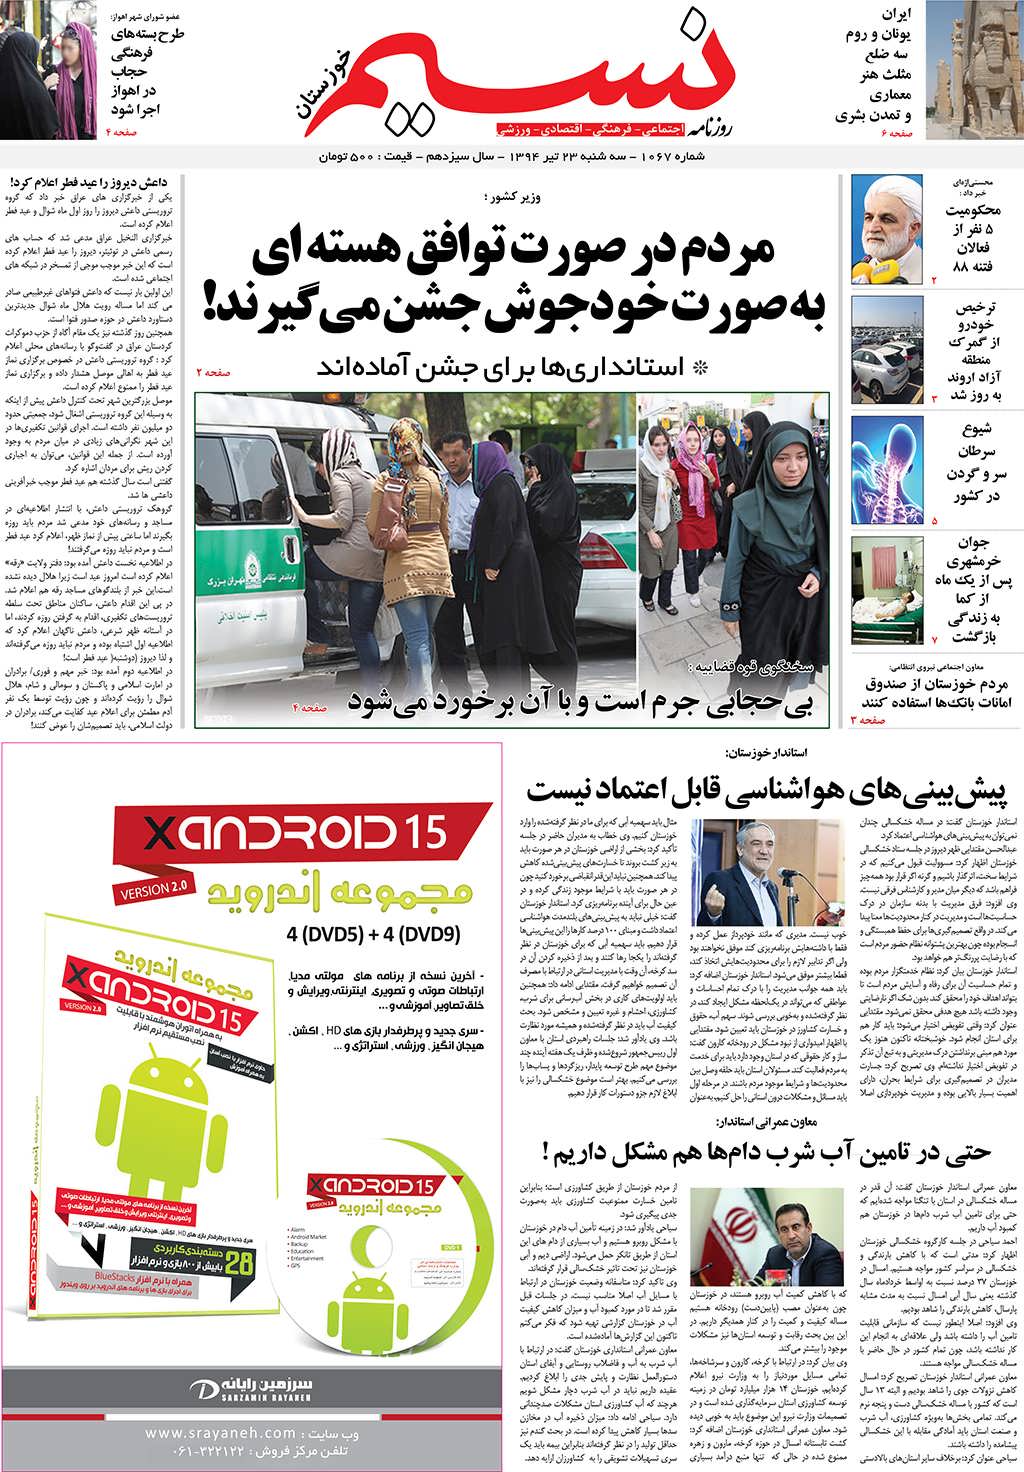 صفحه اصلی روزنامه نسیم شماره 1067